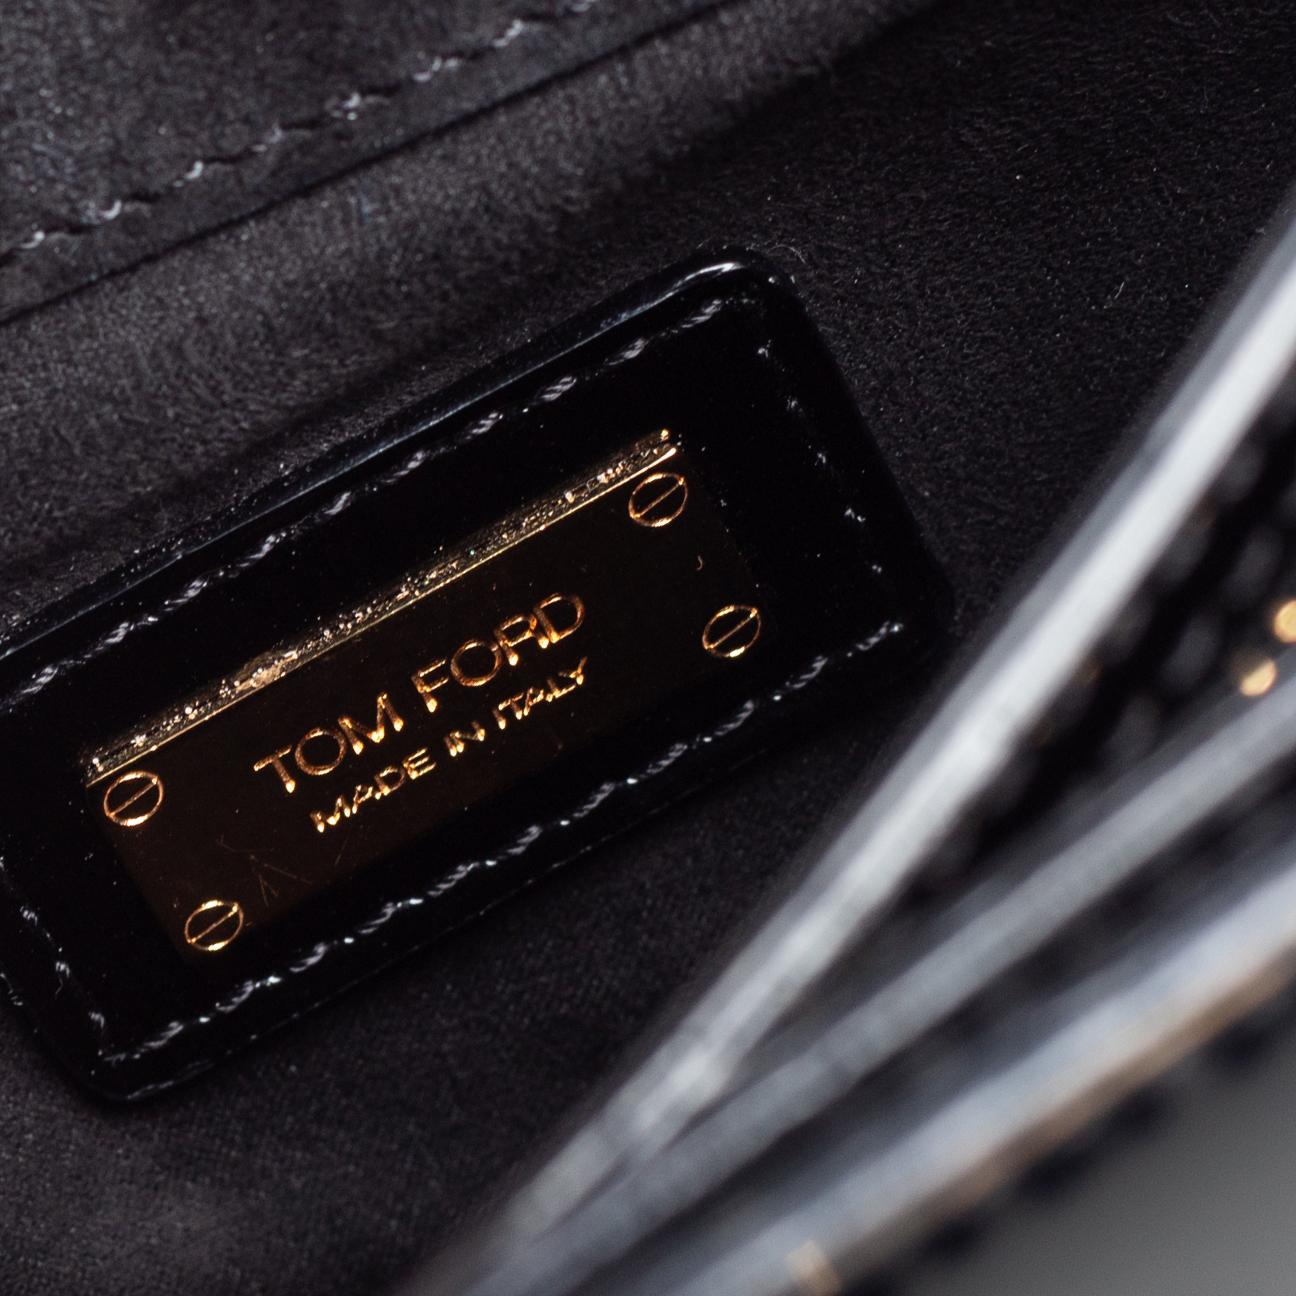 Tom Ford Black Patent Leather Natalia Crossbody Bag In Fair Condition For Sale In Dubai, Al Qouz 2